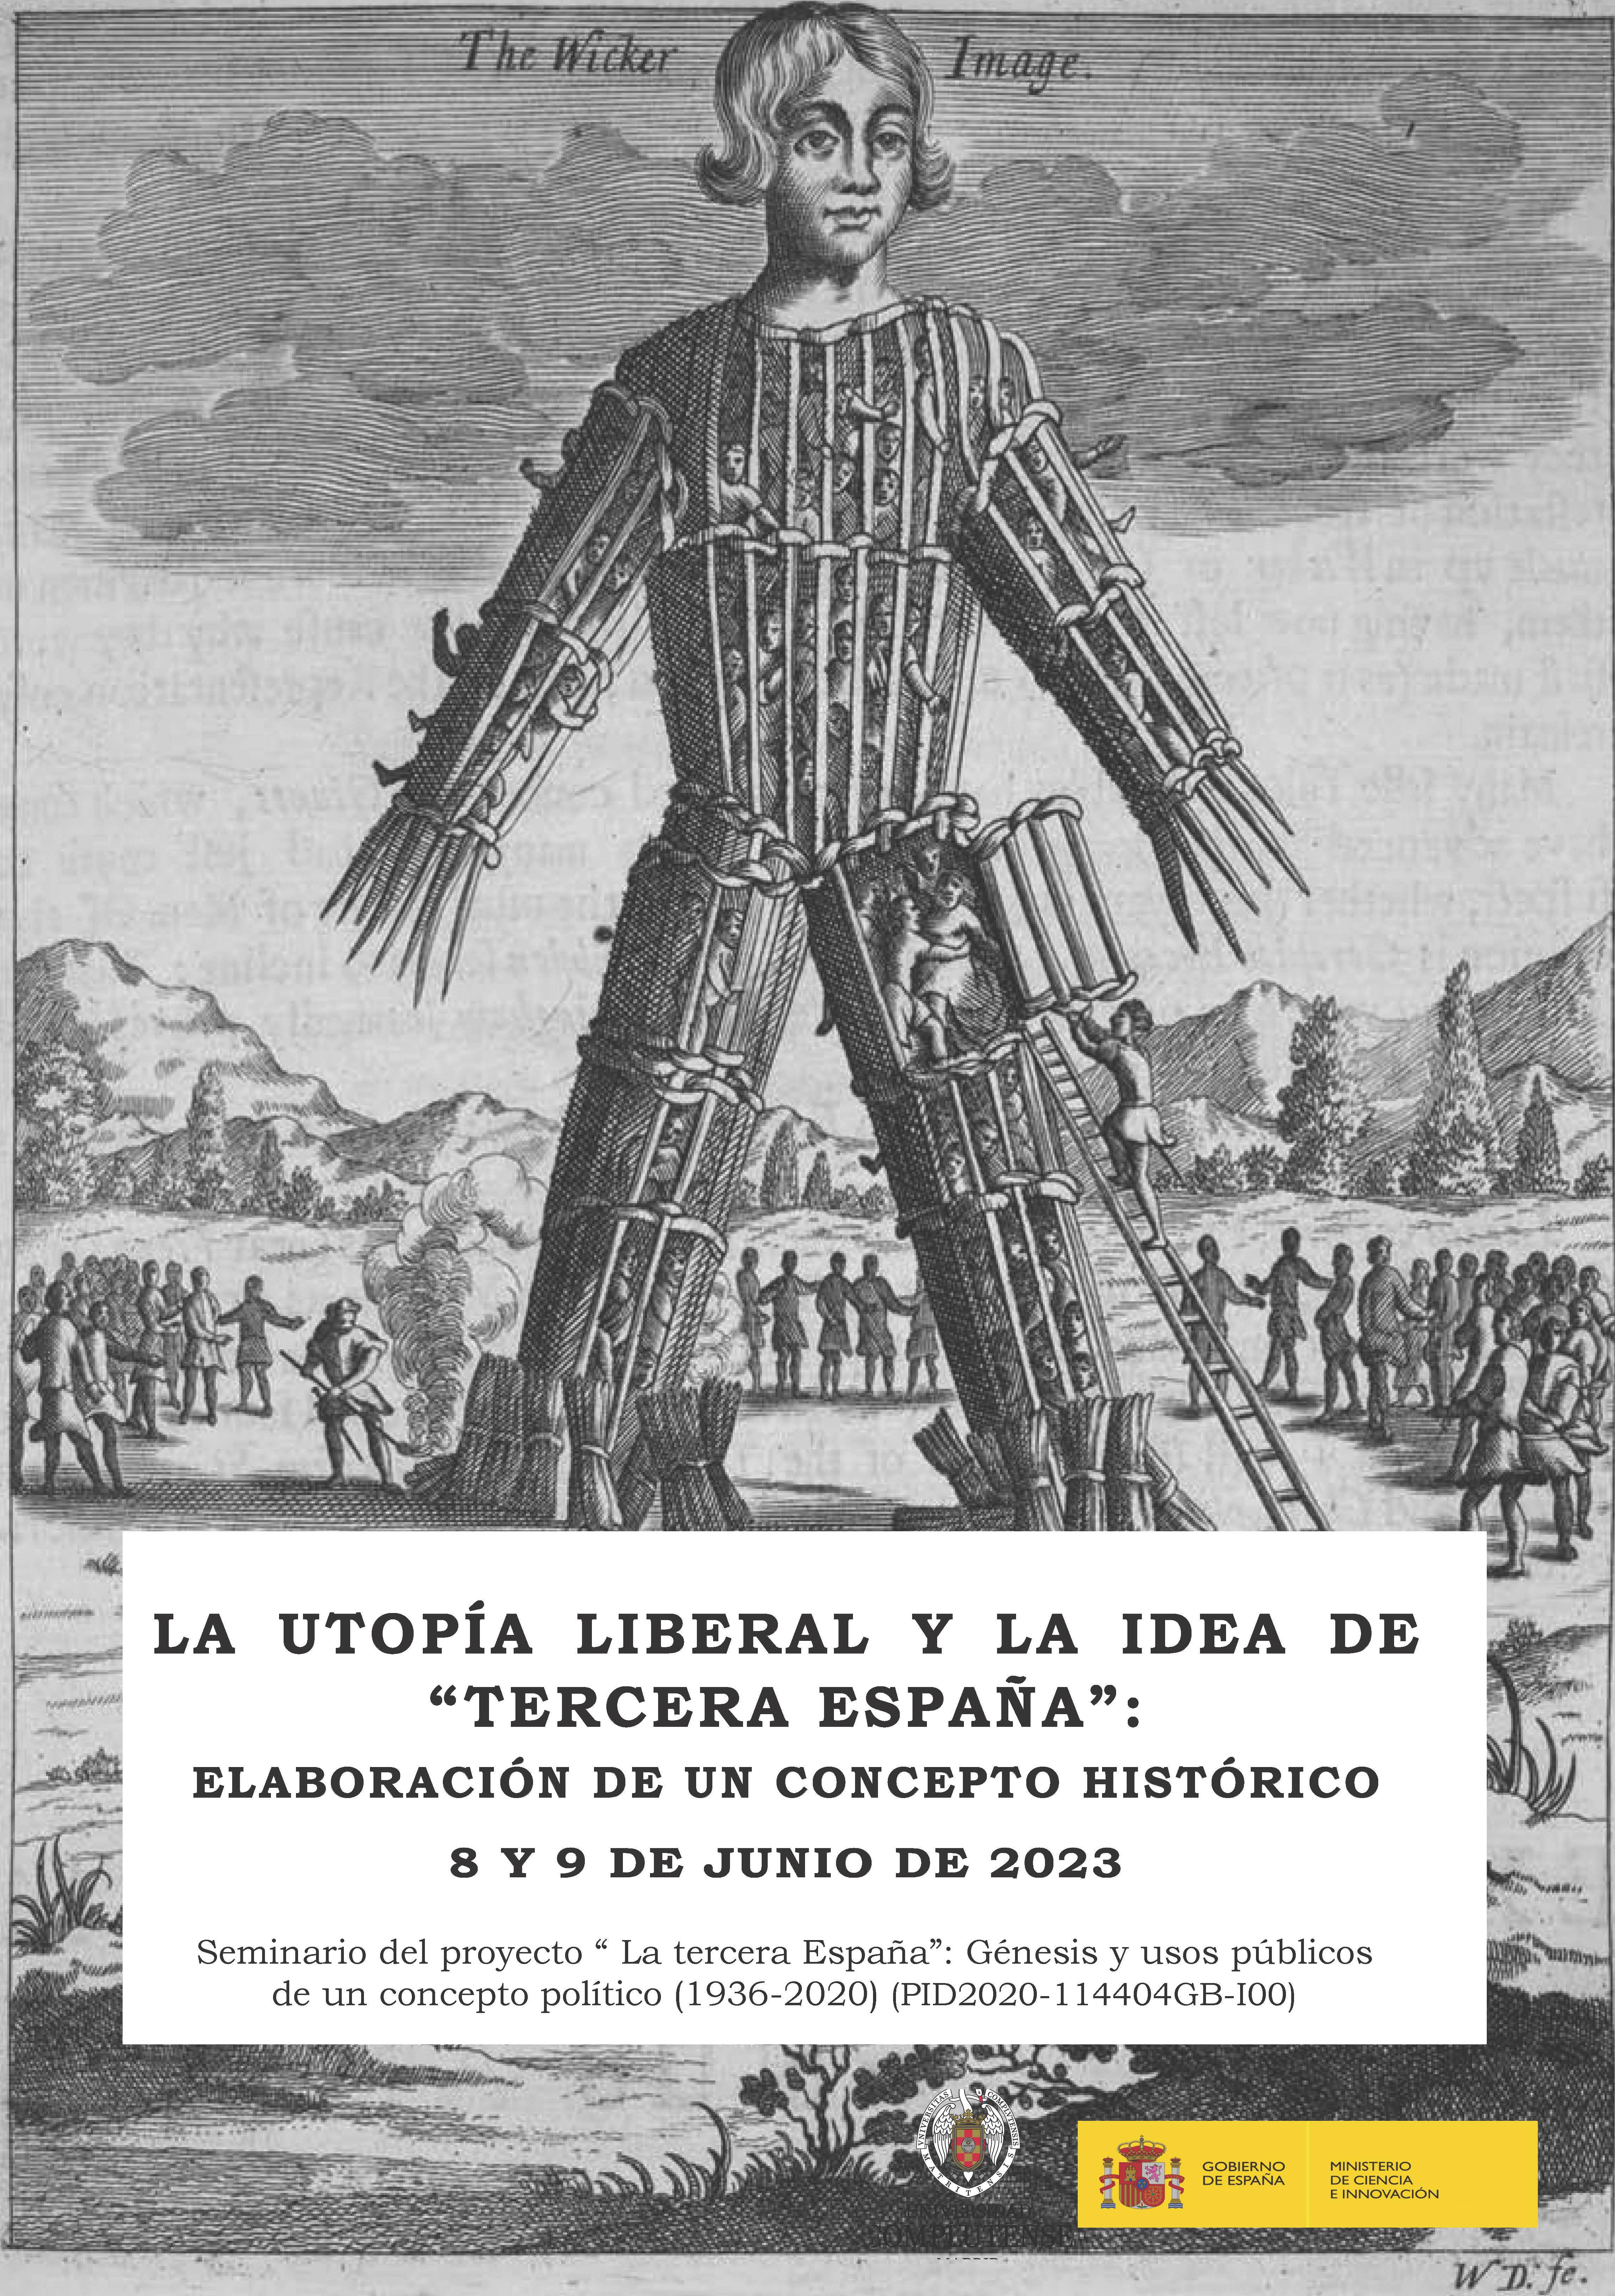 Jornada de Estudios sobre La utopía liberal y la idea de “tercera España”: elaboración de un concepto histórico